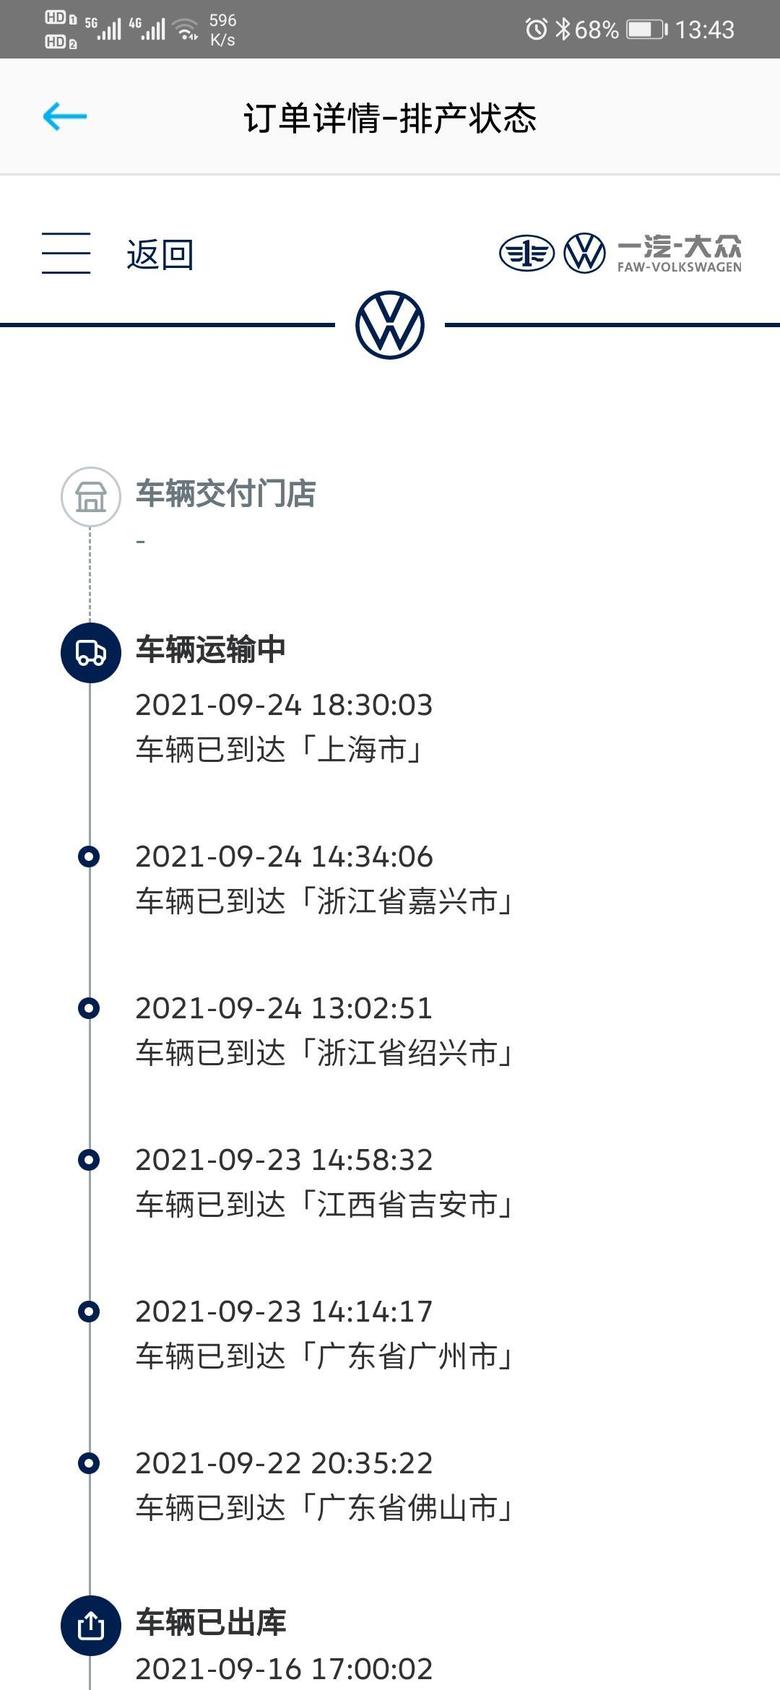 id.6 crozz前天就到上海了，怎么今天还没交付门店？一般得多久呀